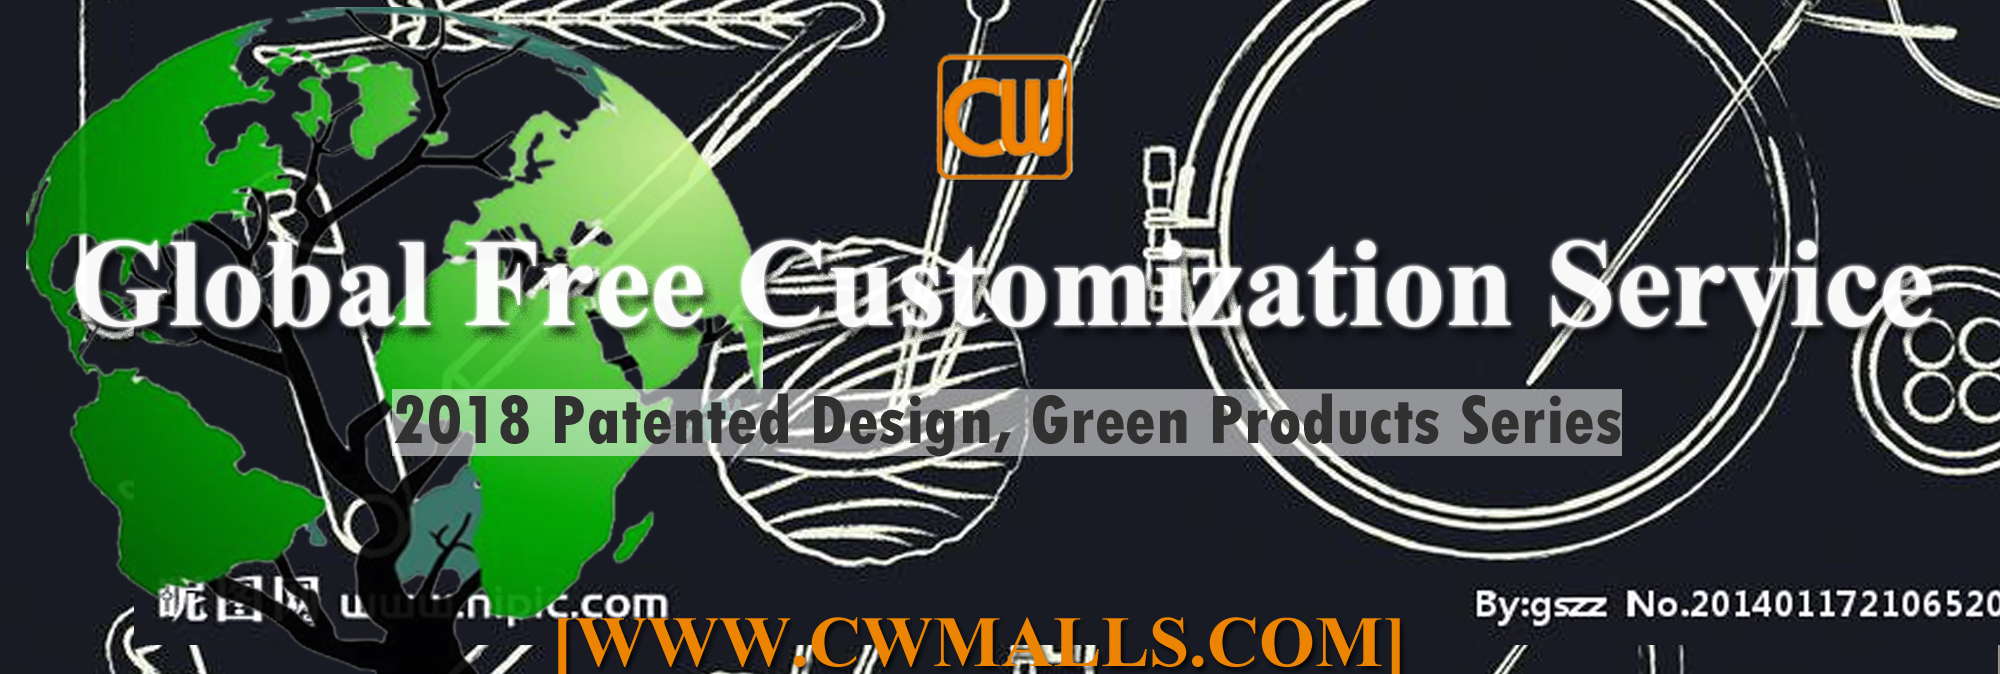 CWMALLS Global Free Customization Service